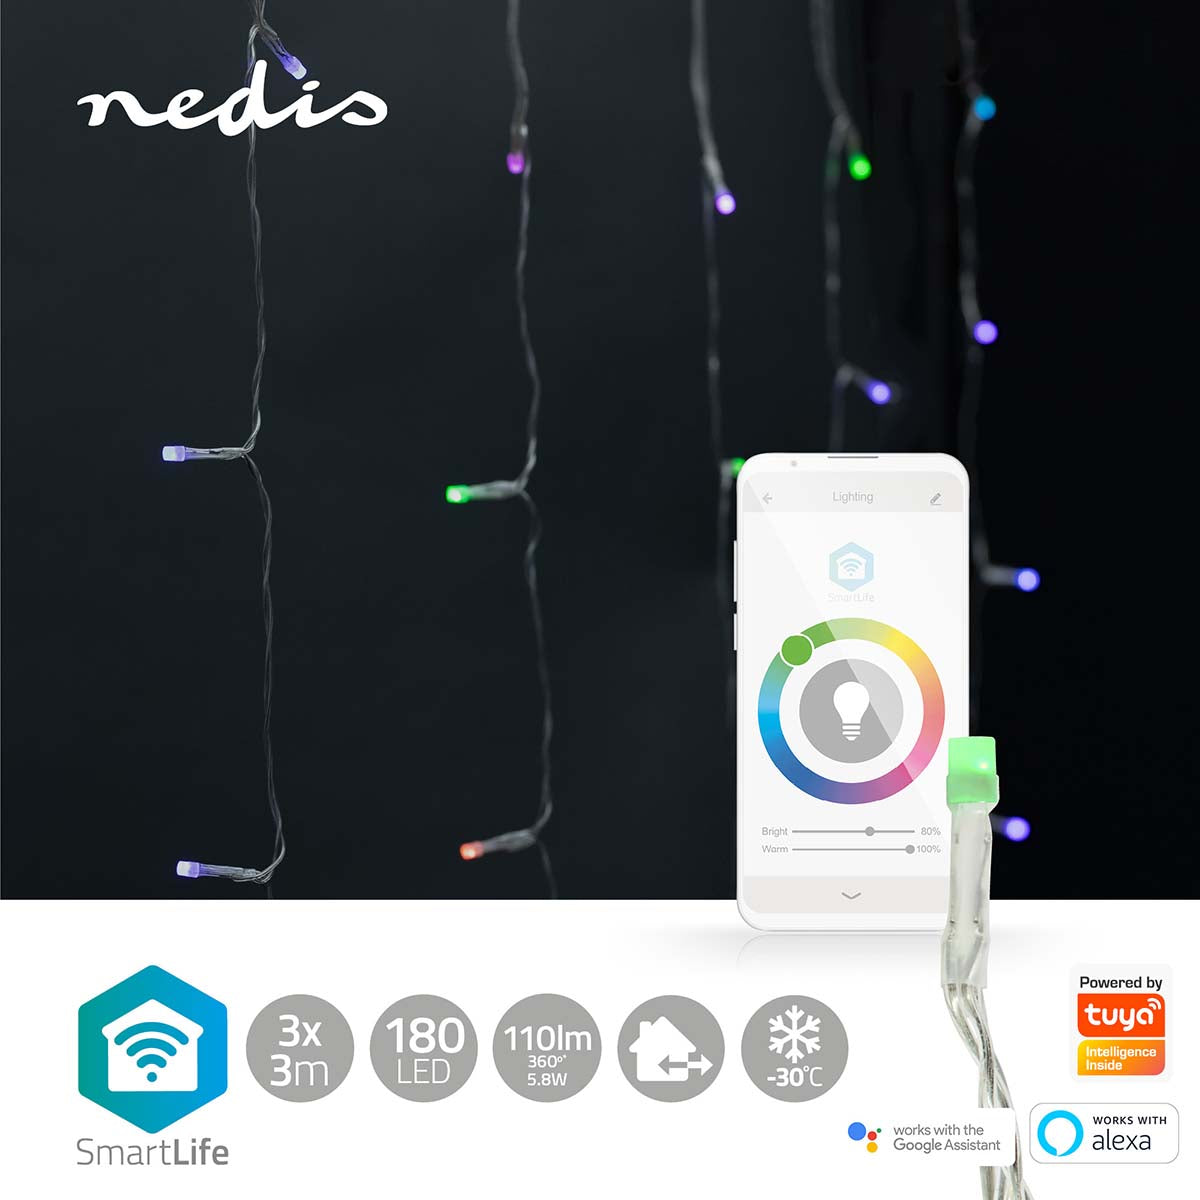 Cortina Nedis Wi-Fi RGB: iluminação inteligente de Natal. Com 180 LEDs em 3m, crie uma atmosfera única e personalizada com facilidade.